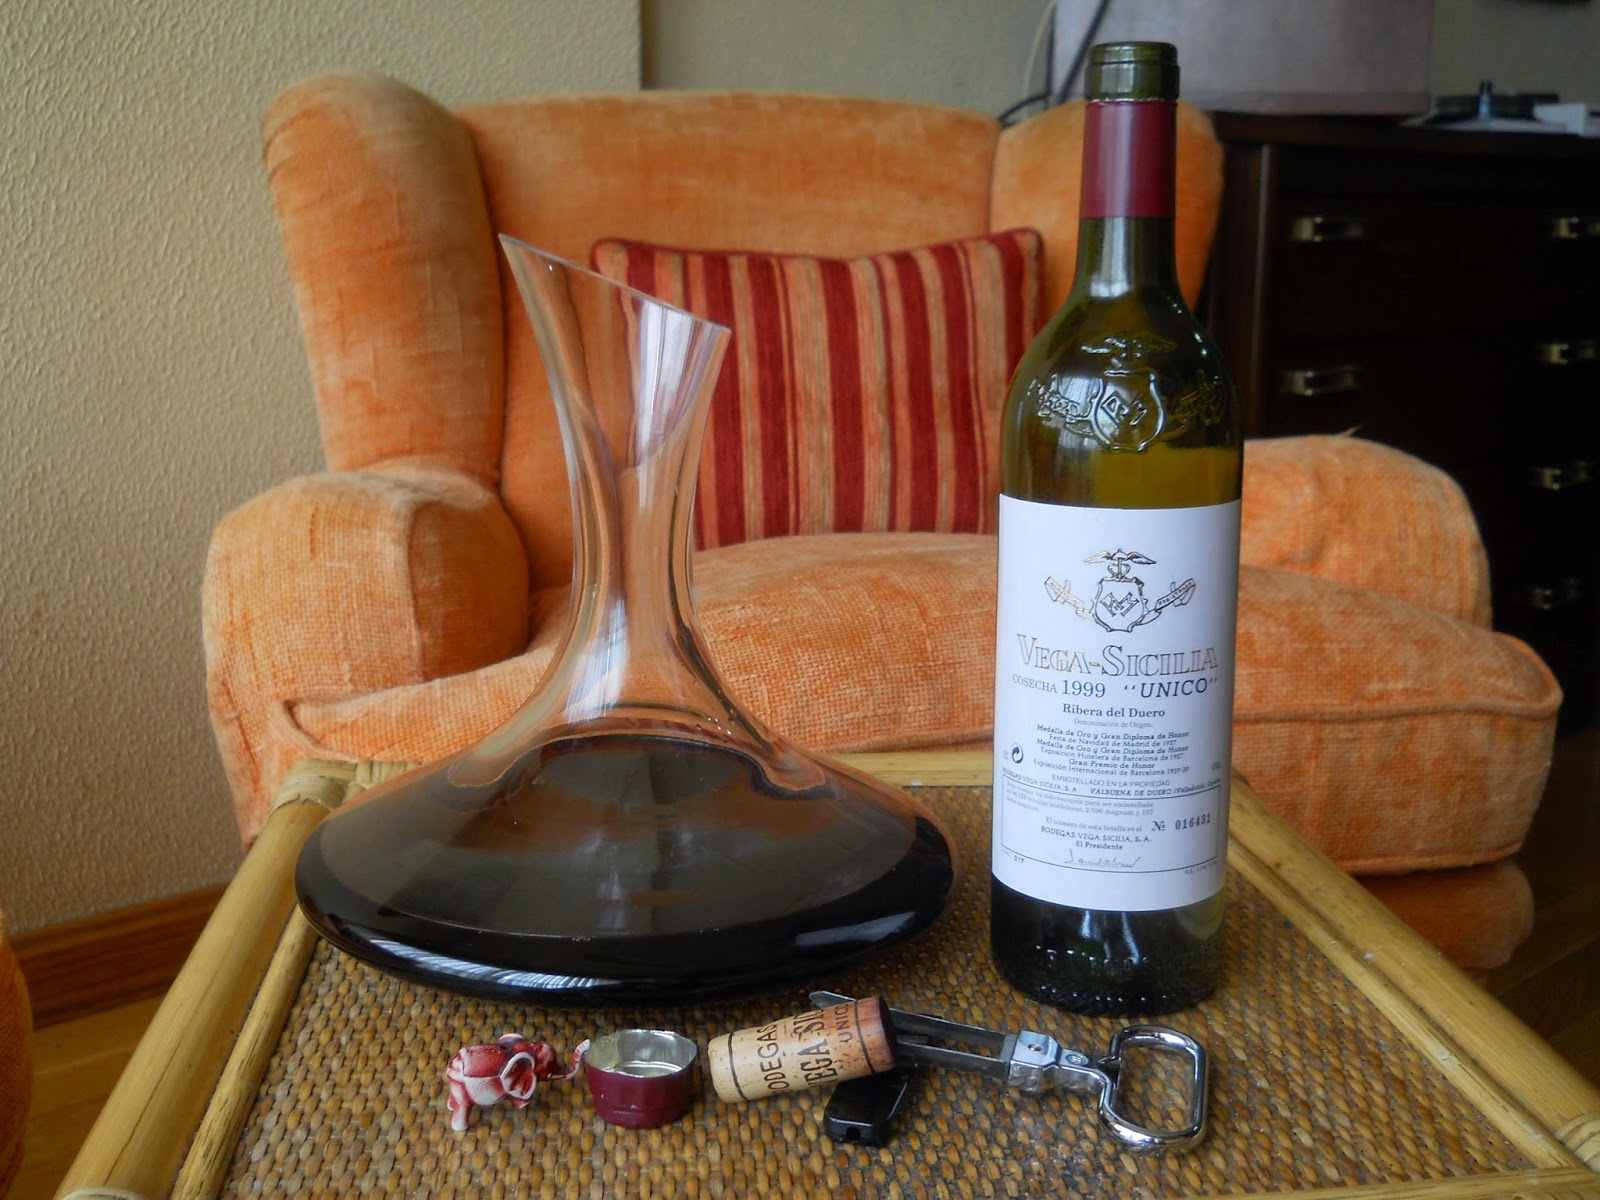 Qué podemos saber de un vino por su corcho? / Blog Bodega Santa Cecilia